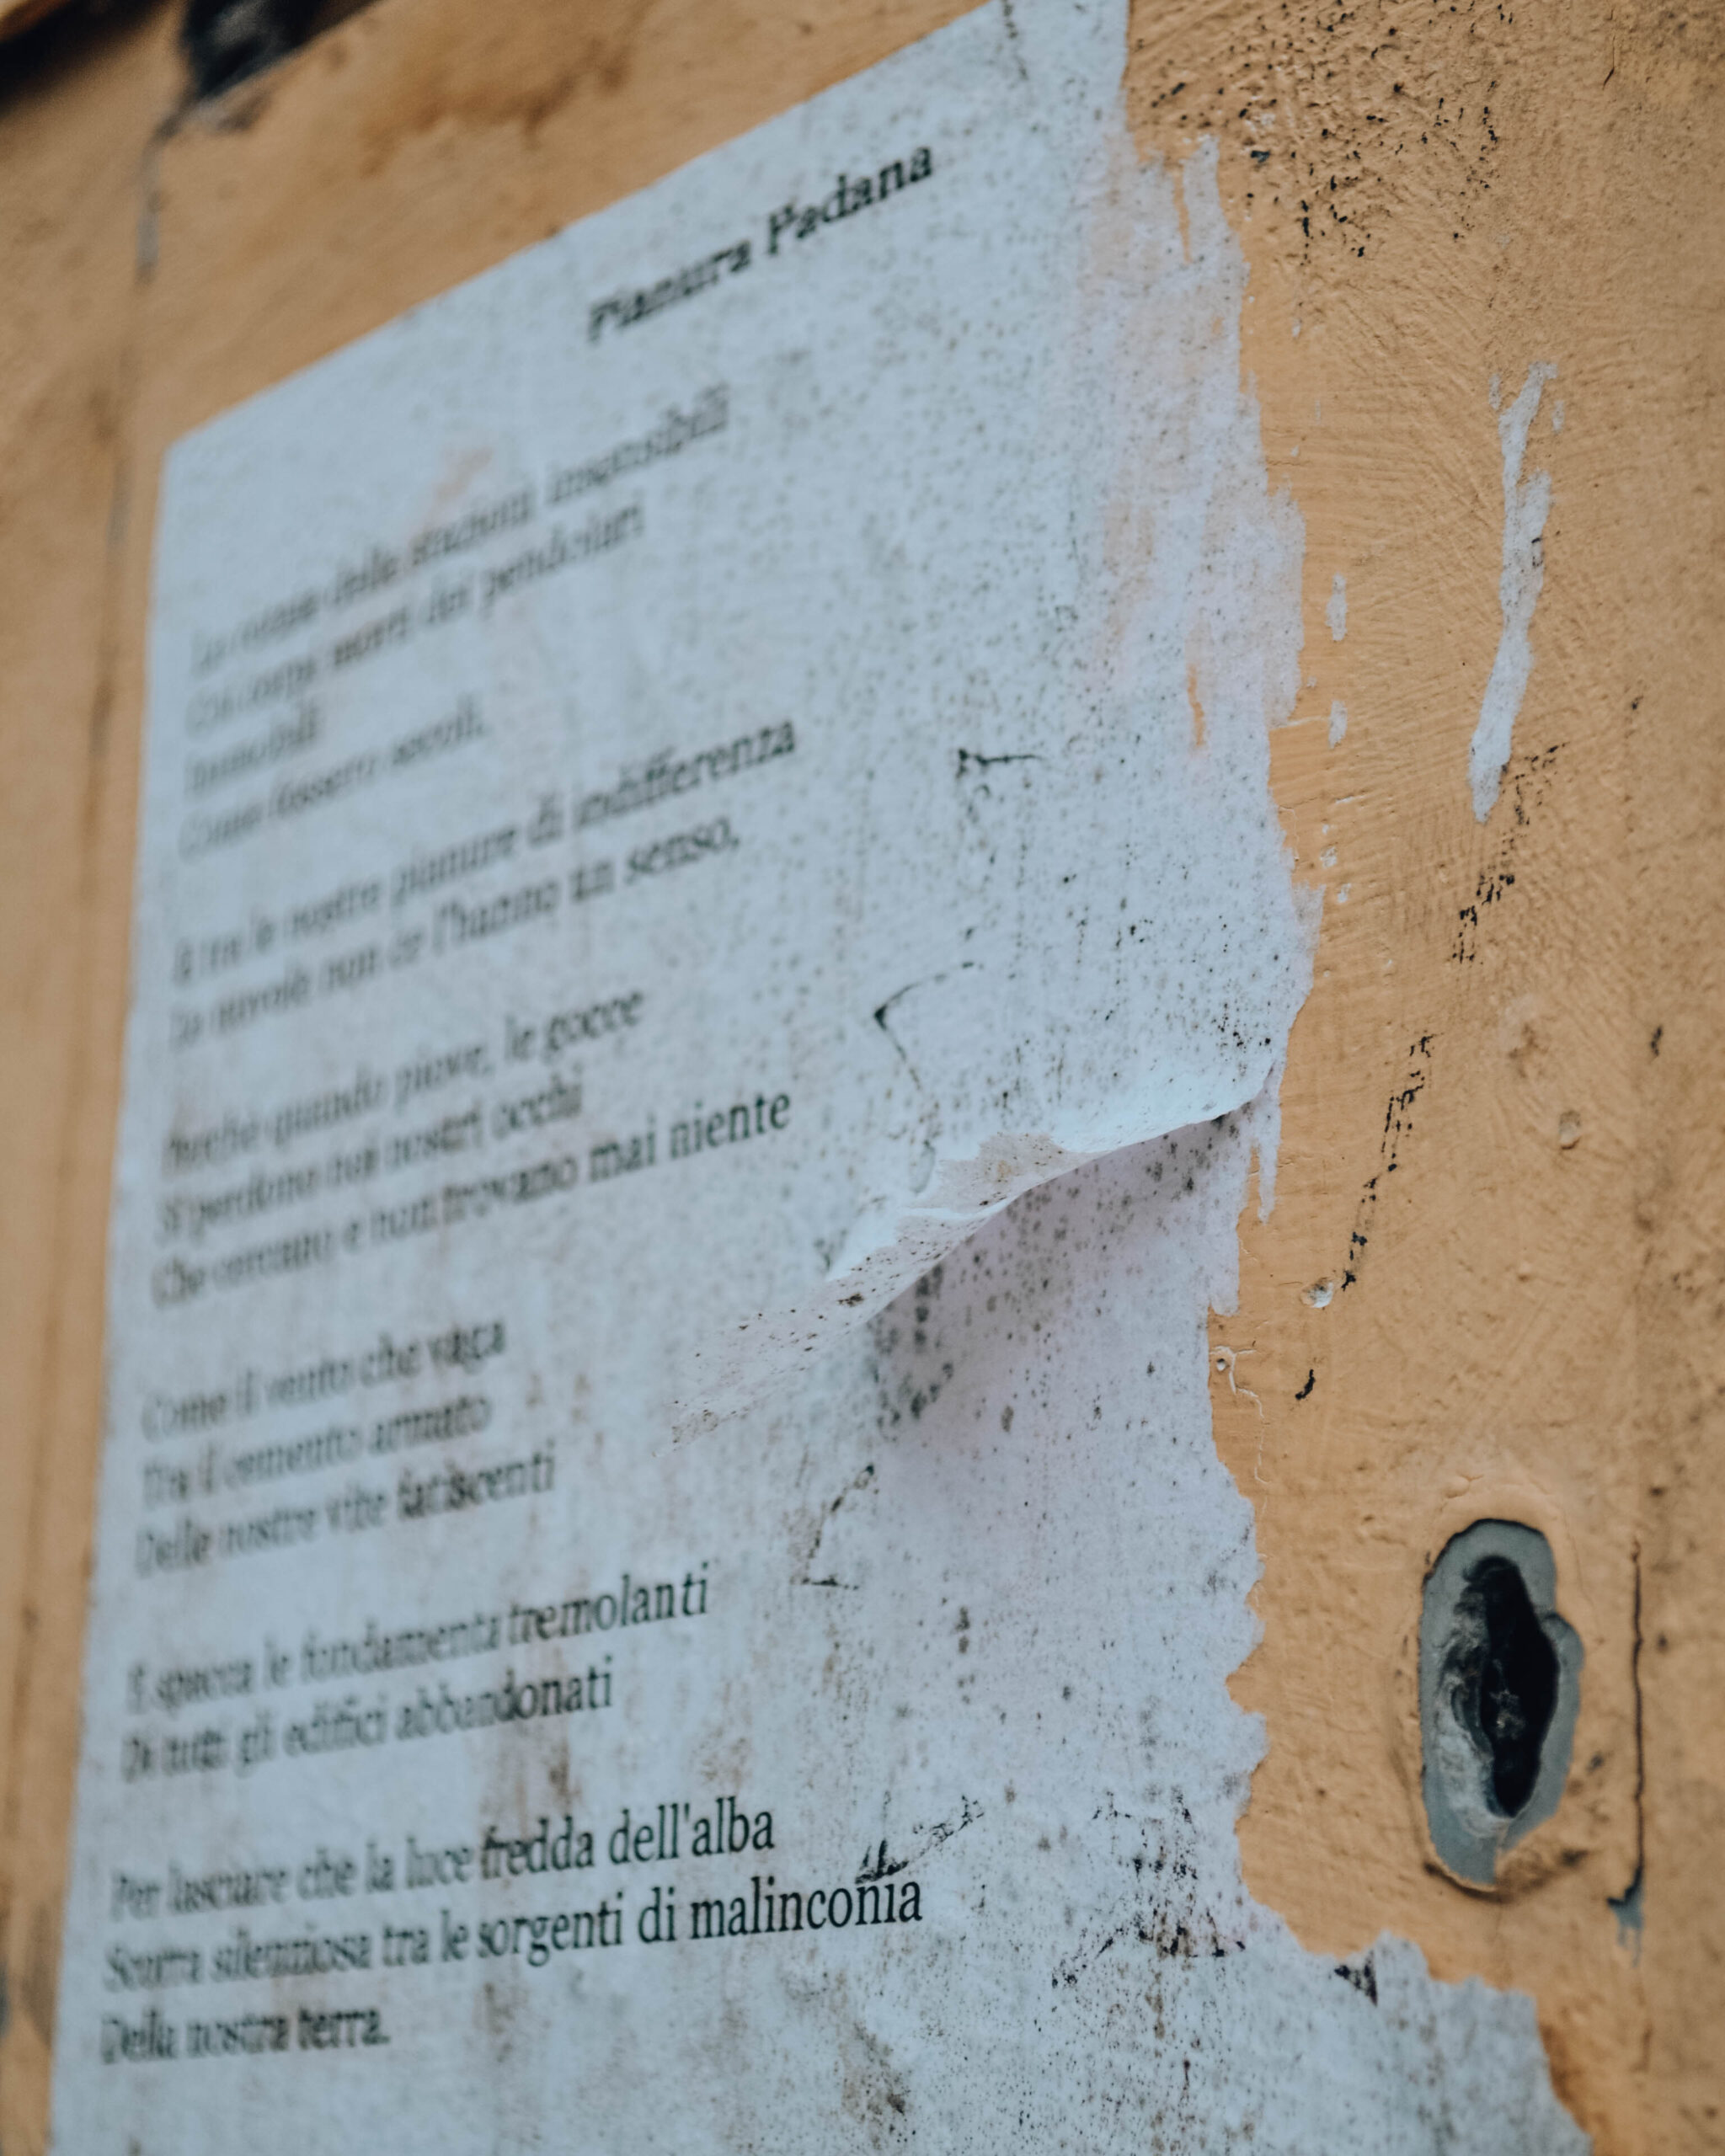 poesia scritta su foglio bianco affissa su muro in città